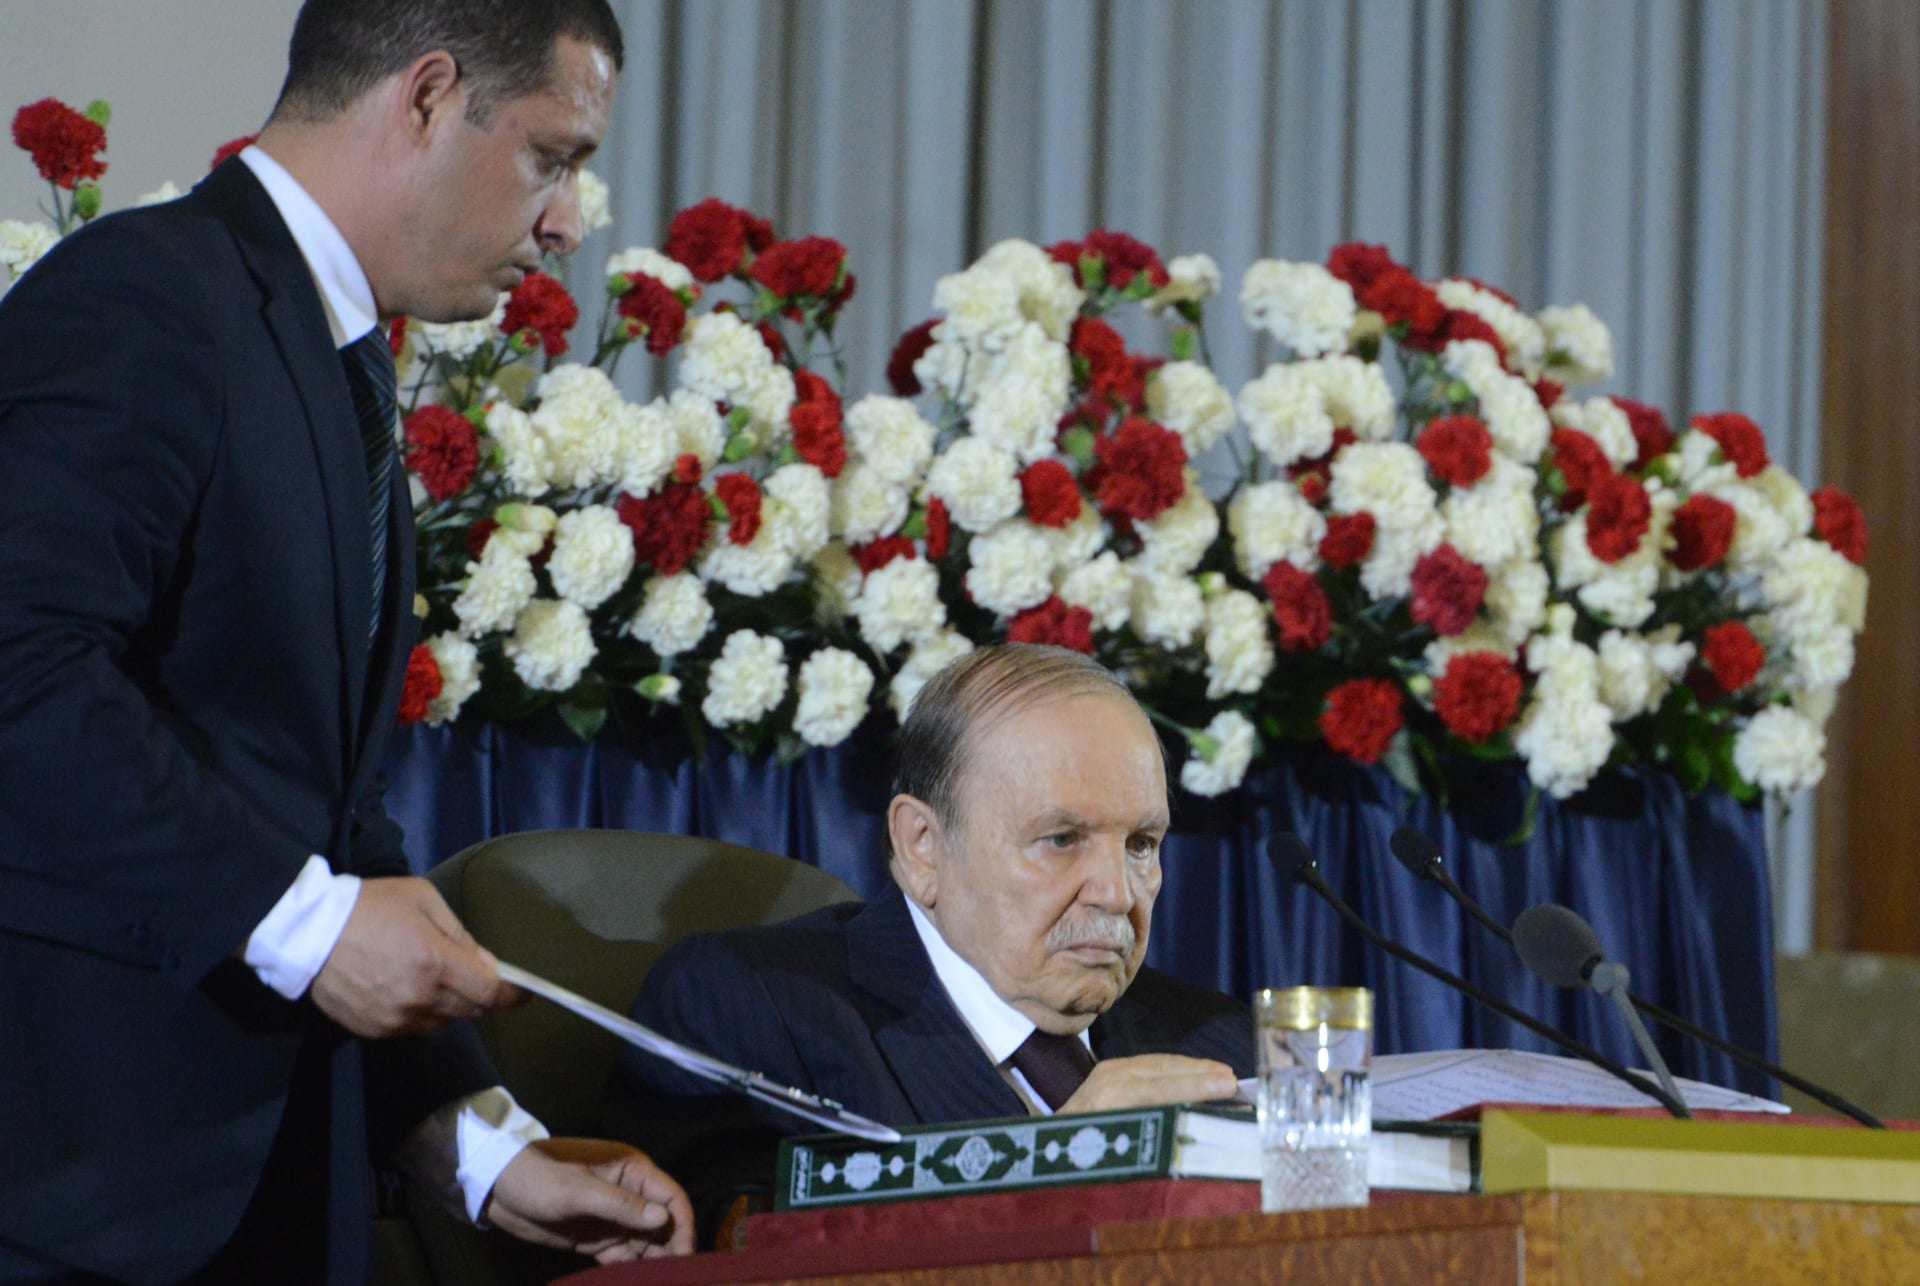 قبل شهرين من الانتخابات الرئاسية.. بوتفليقة يعين مستشاره رئيسا للمجلس الدستوري في الجزائر